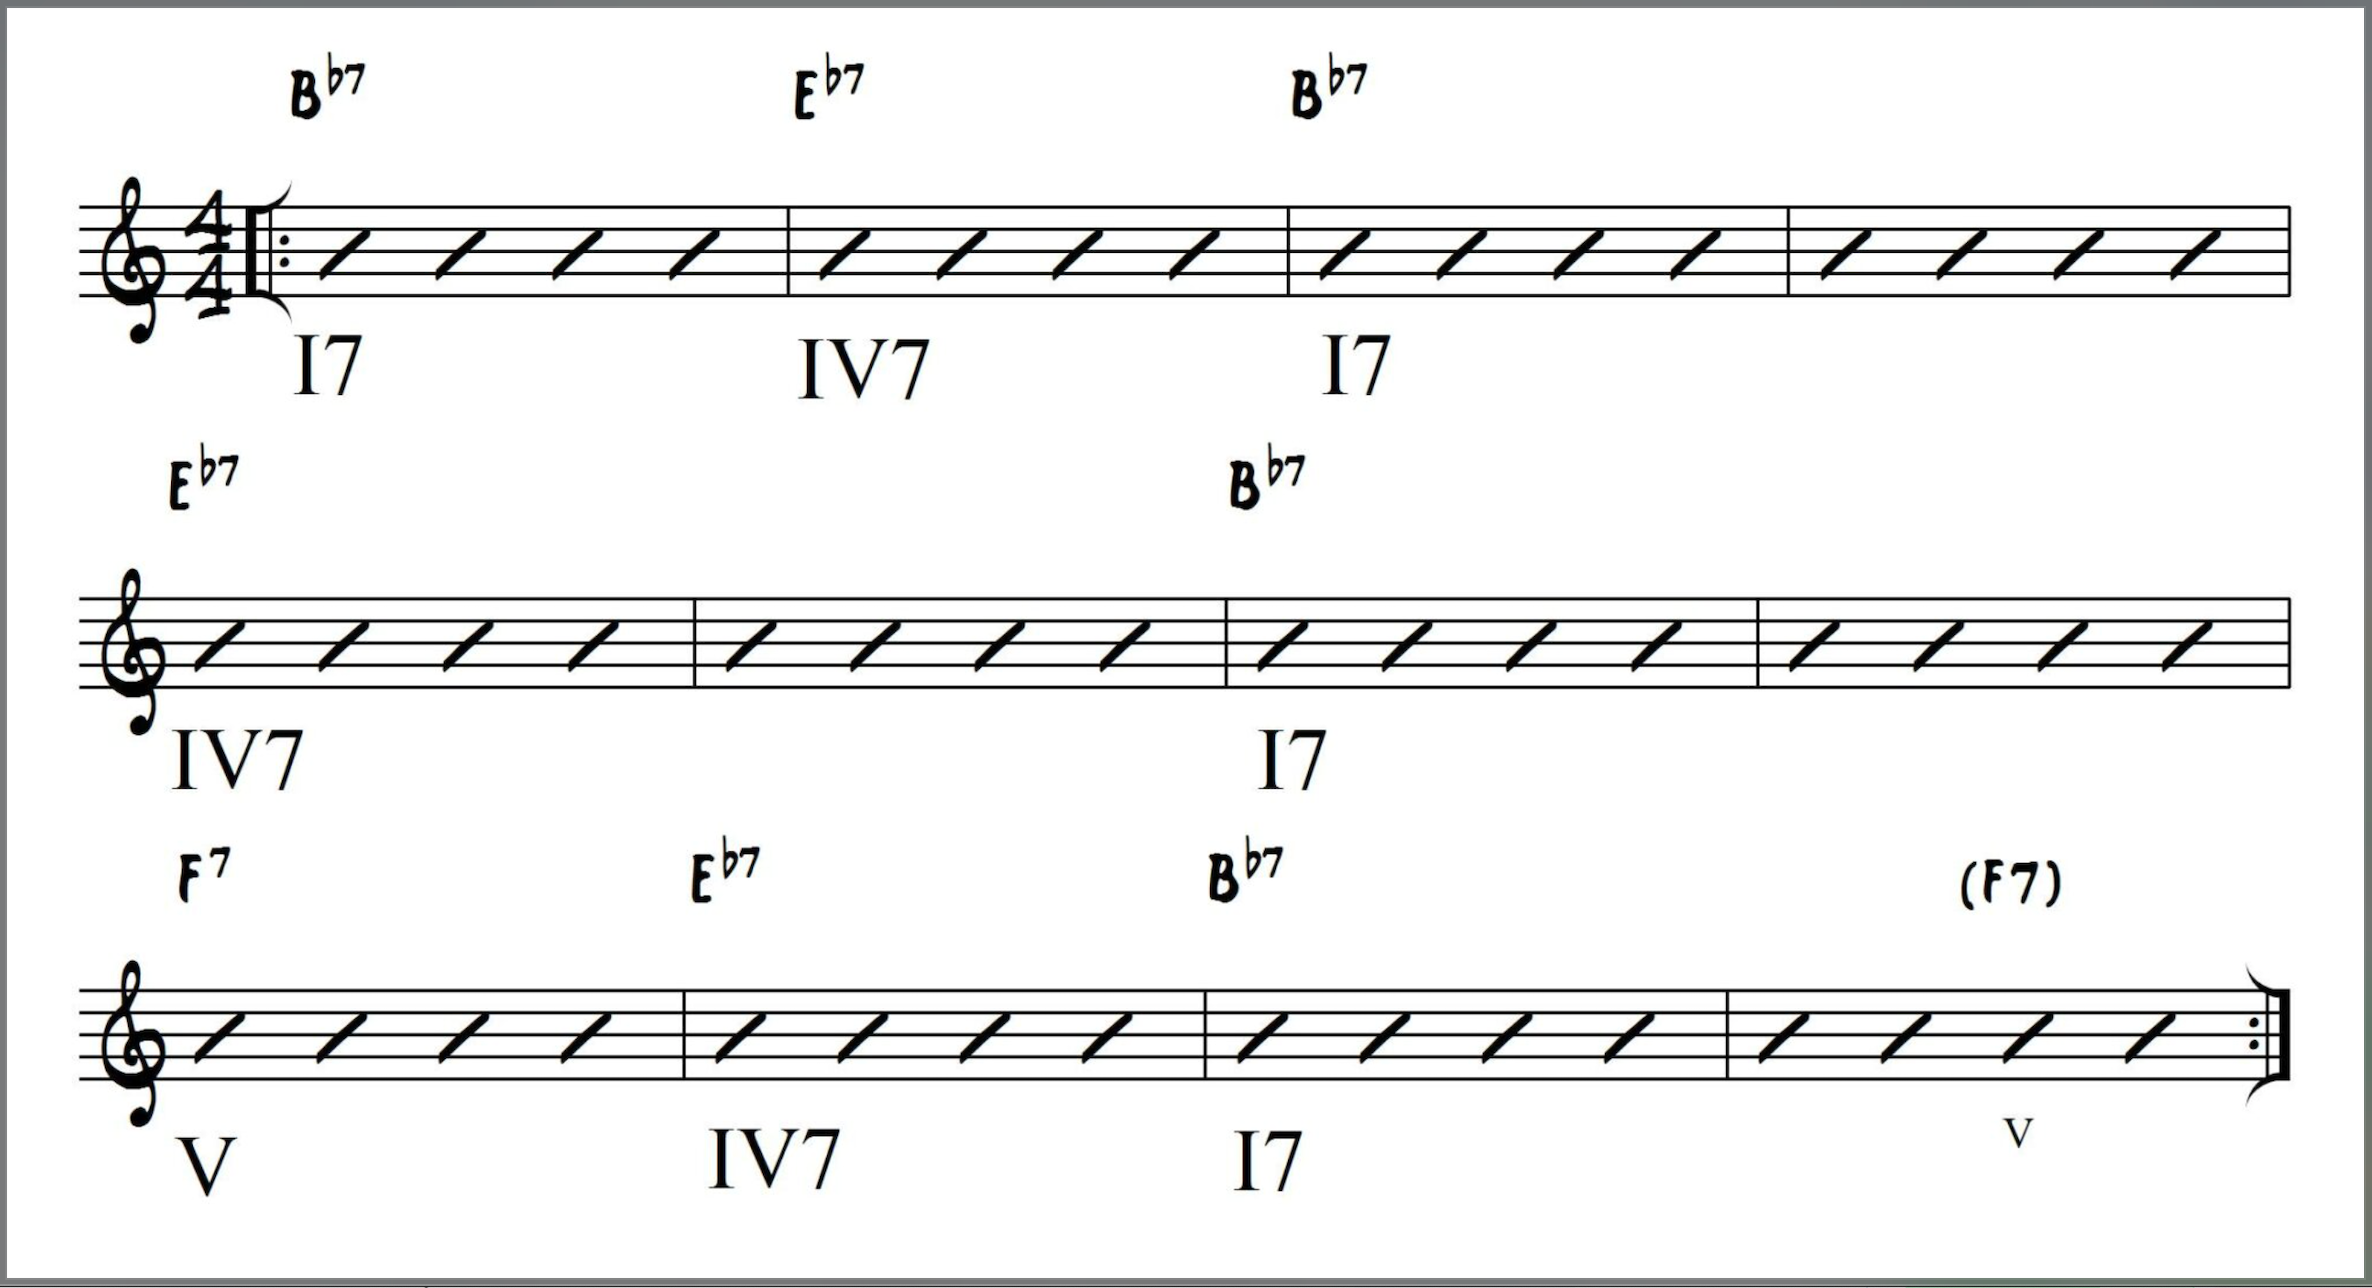 Basic I7-IV7-V7 Blues Chord Progression